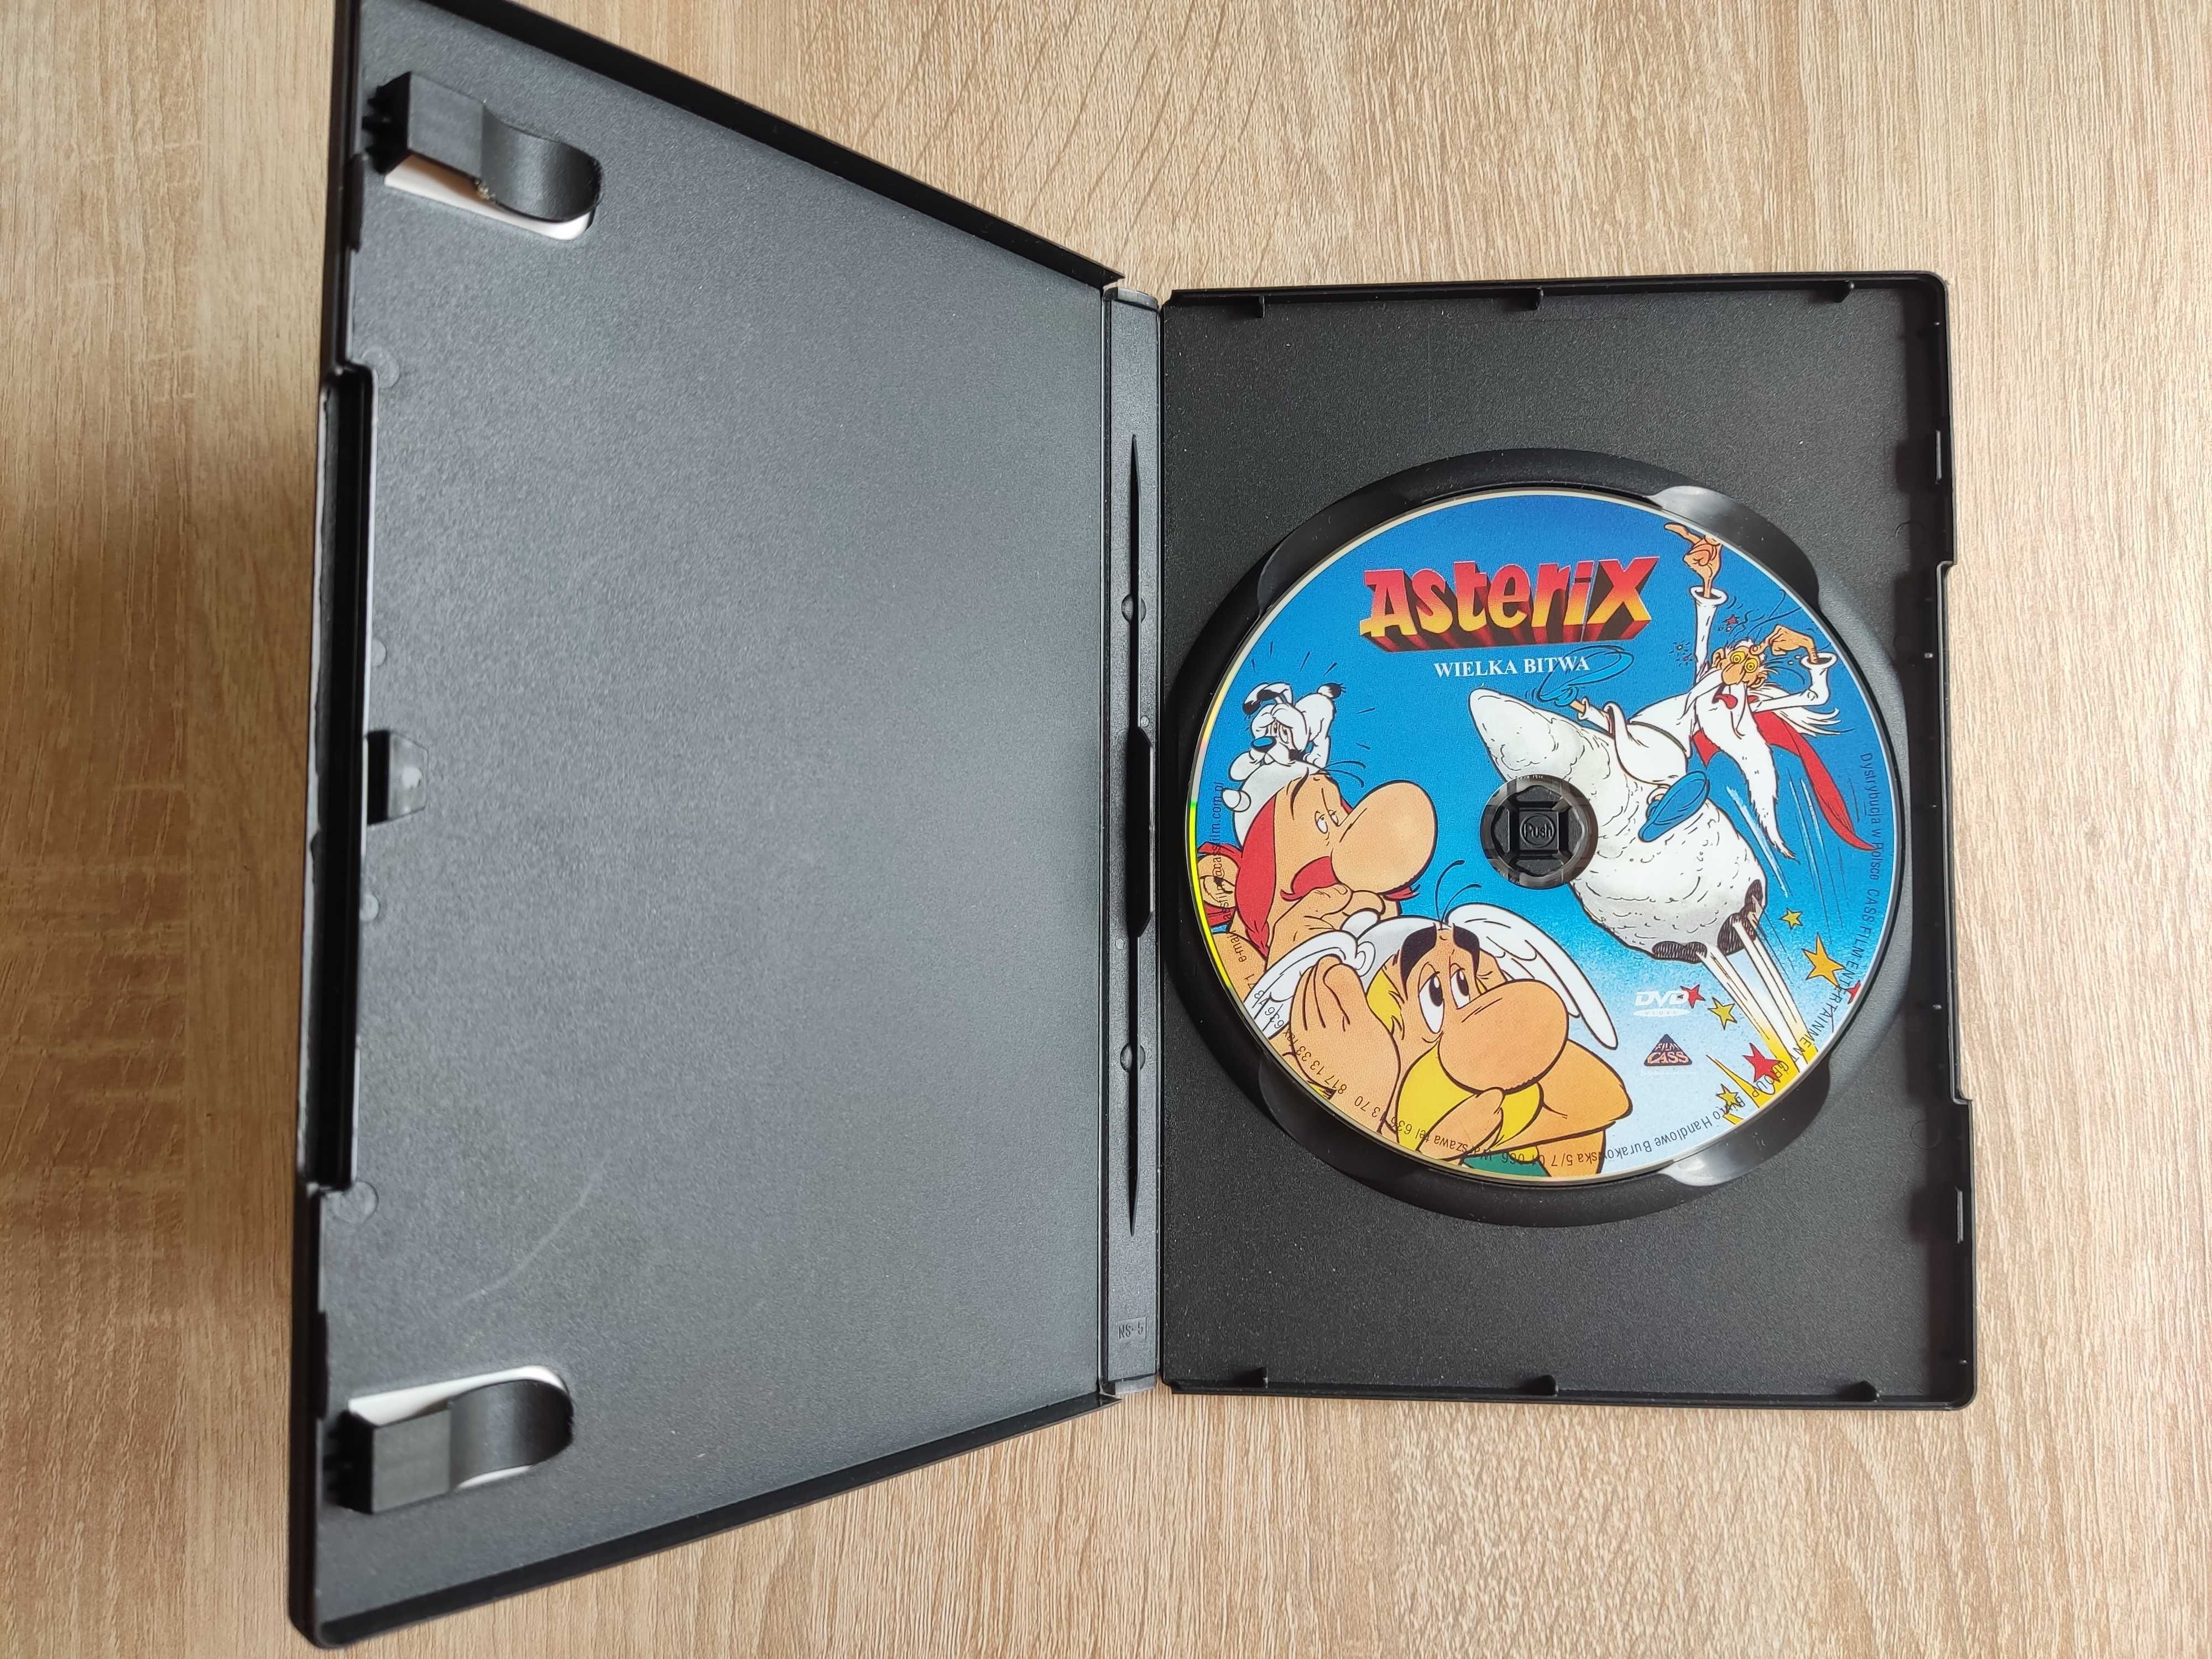 Asterix Wielka Bitwa DVD Asterixa Asteriks Unikat